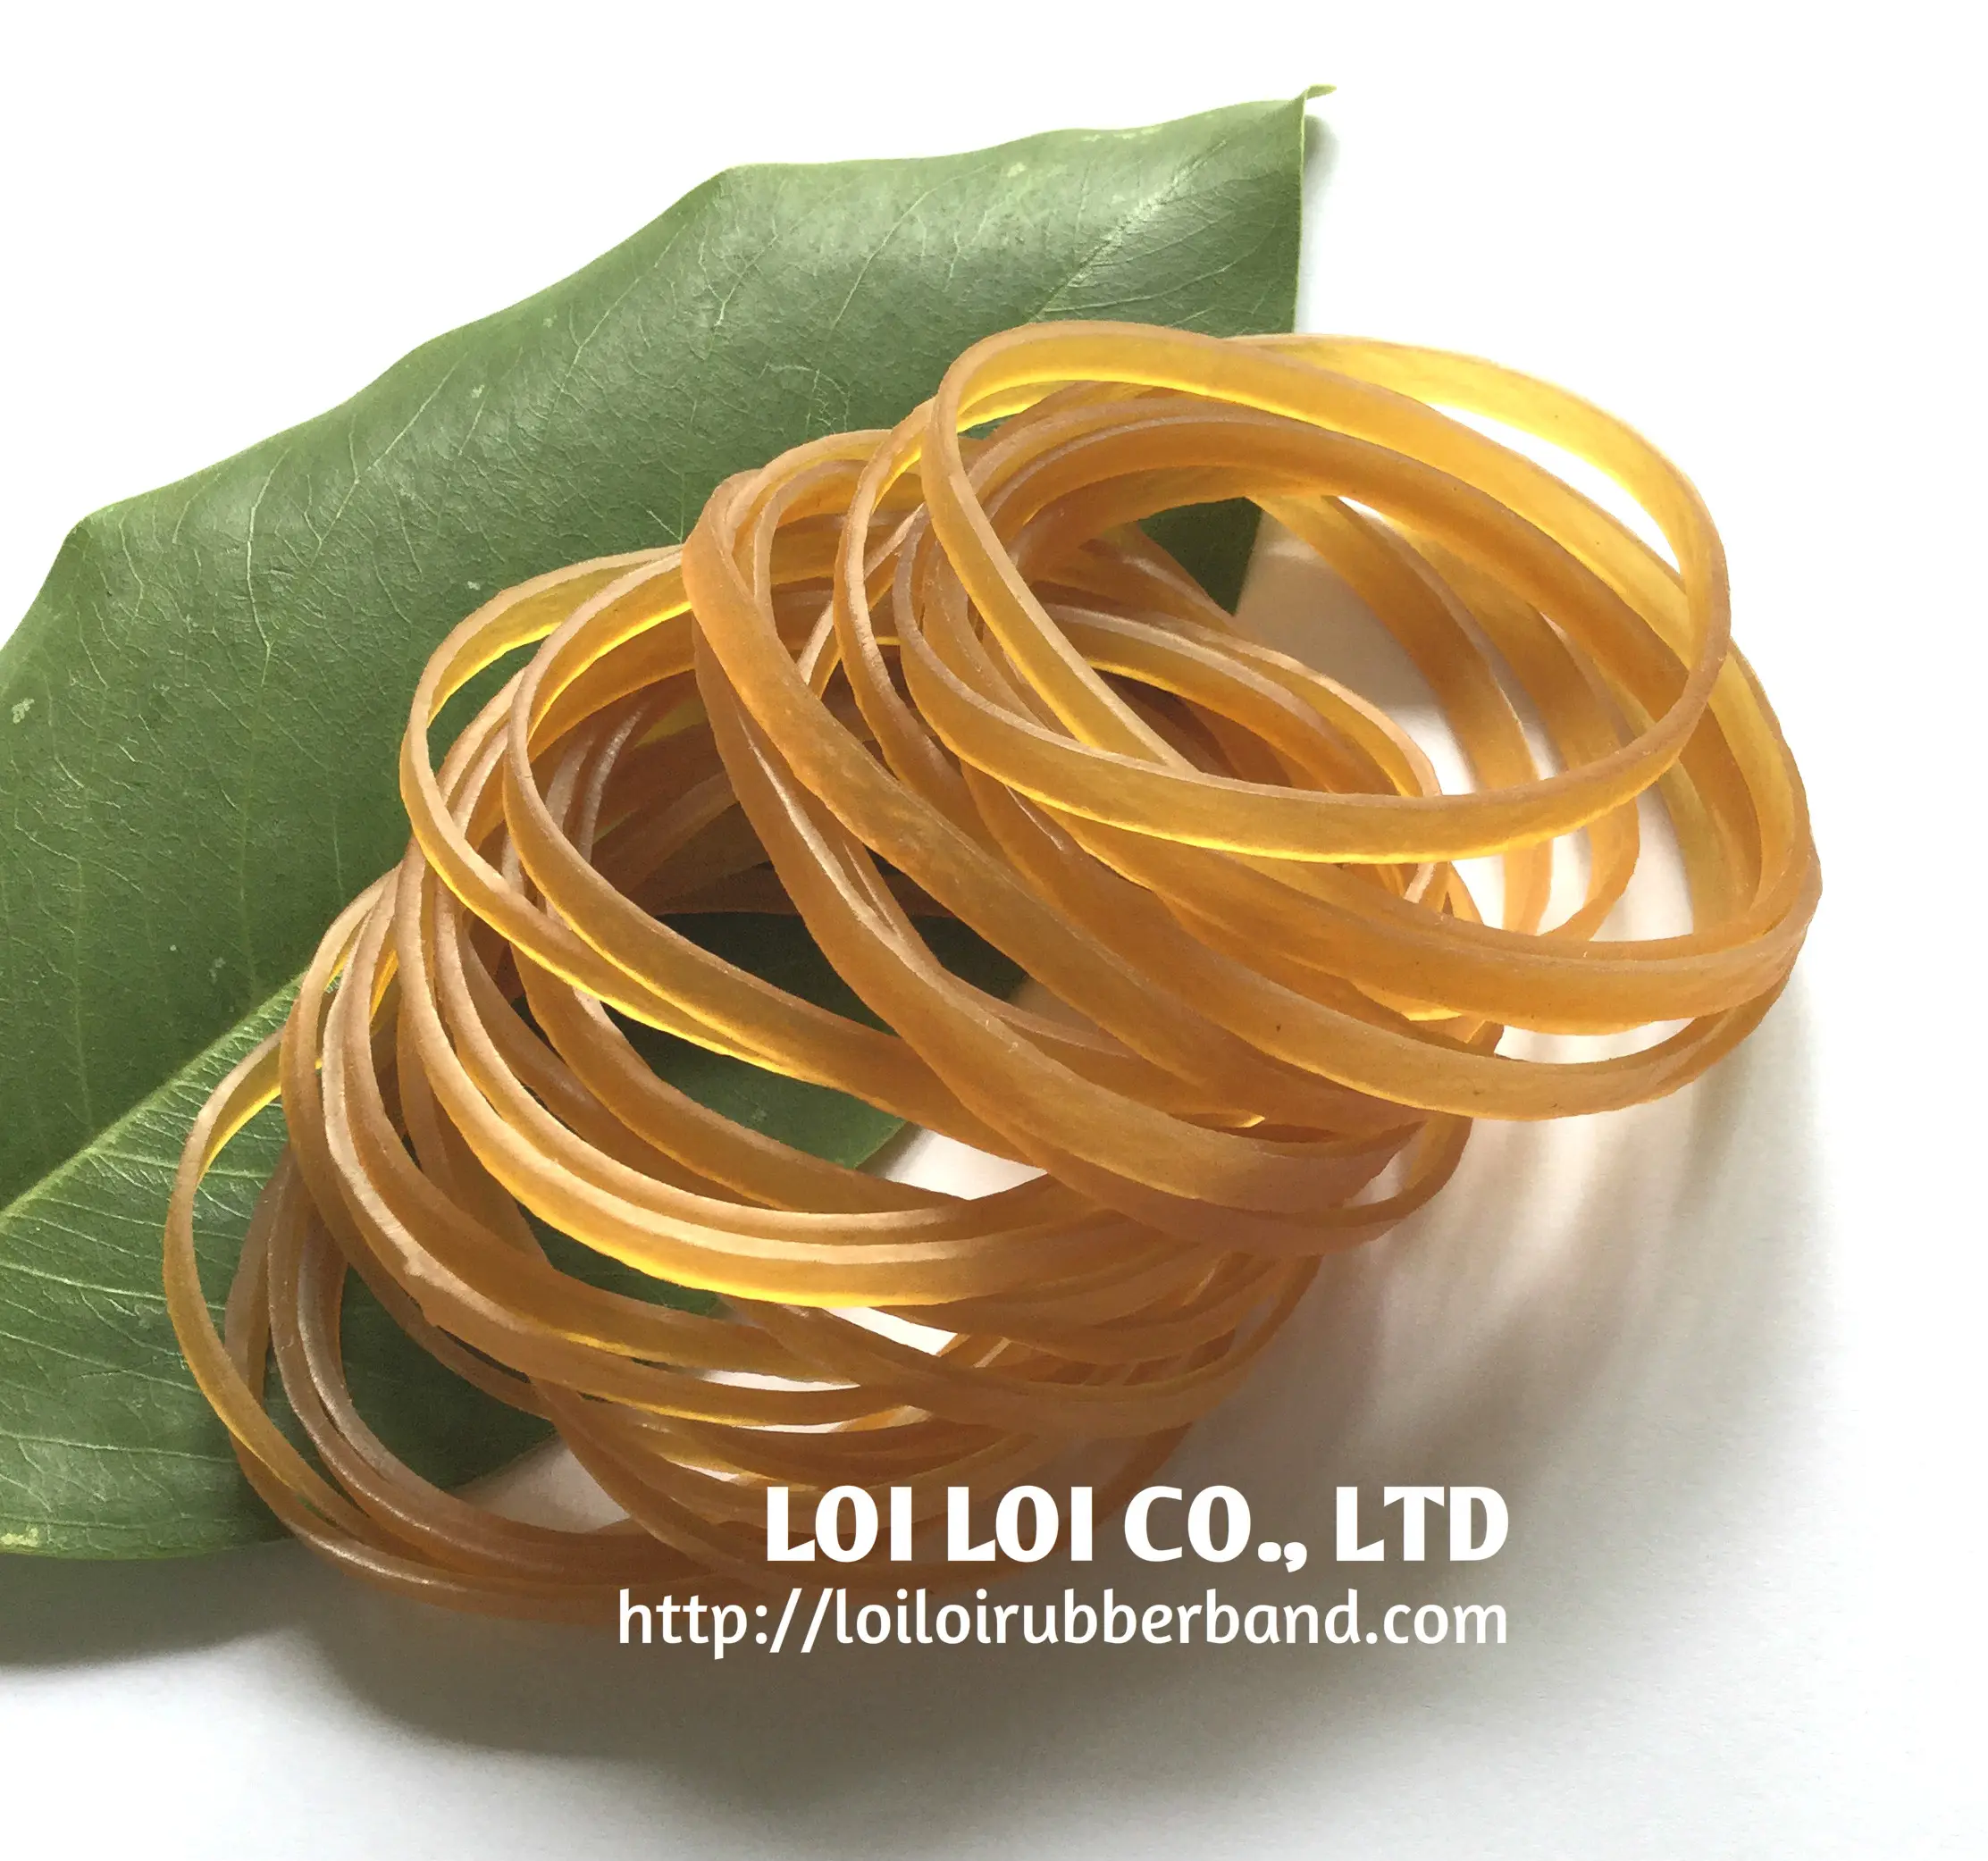 Banda de borracha natural transparente, feita na elasticidade do vietnã, pode ser resistida em alta temperatura com cor amarela ou mel